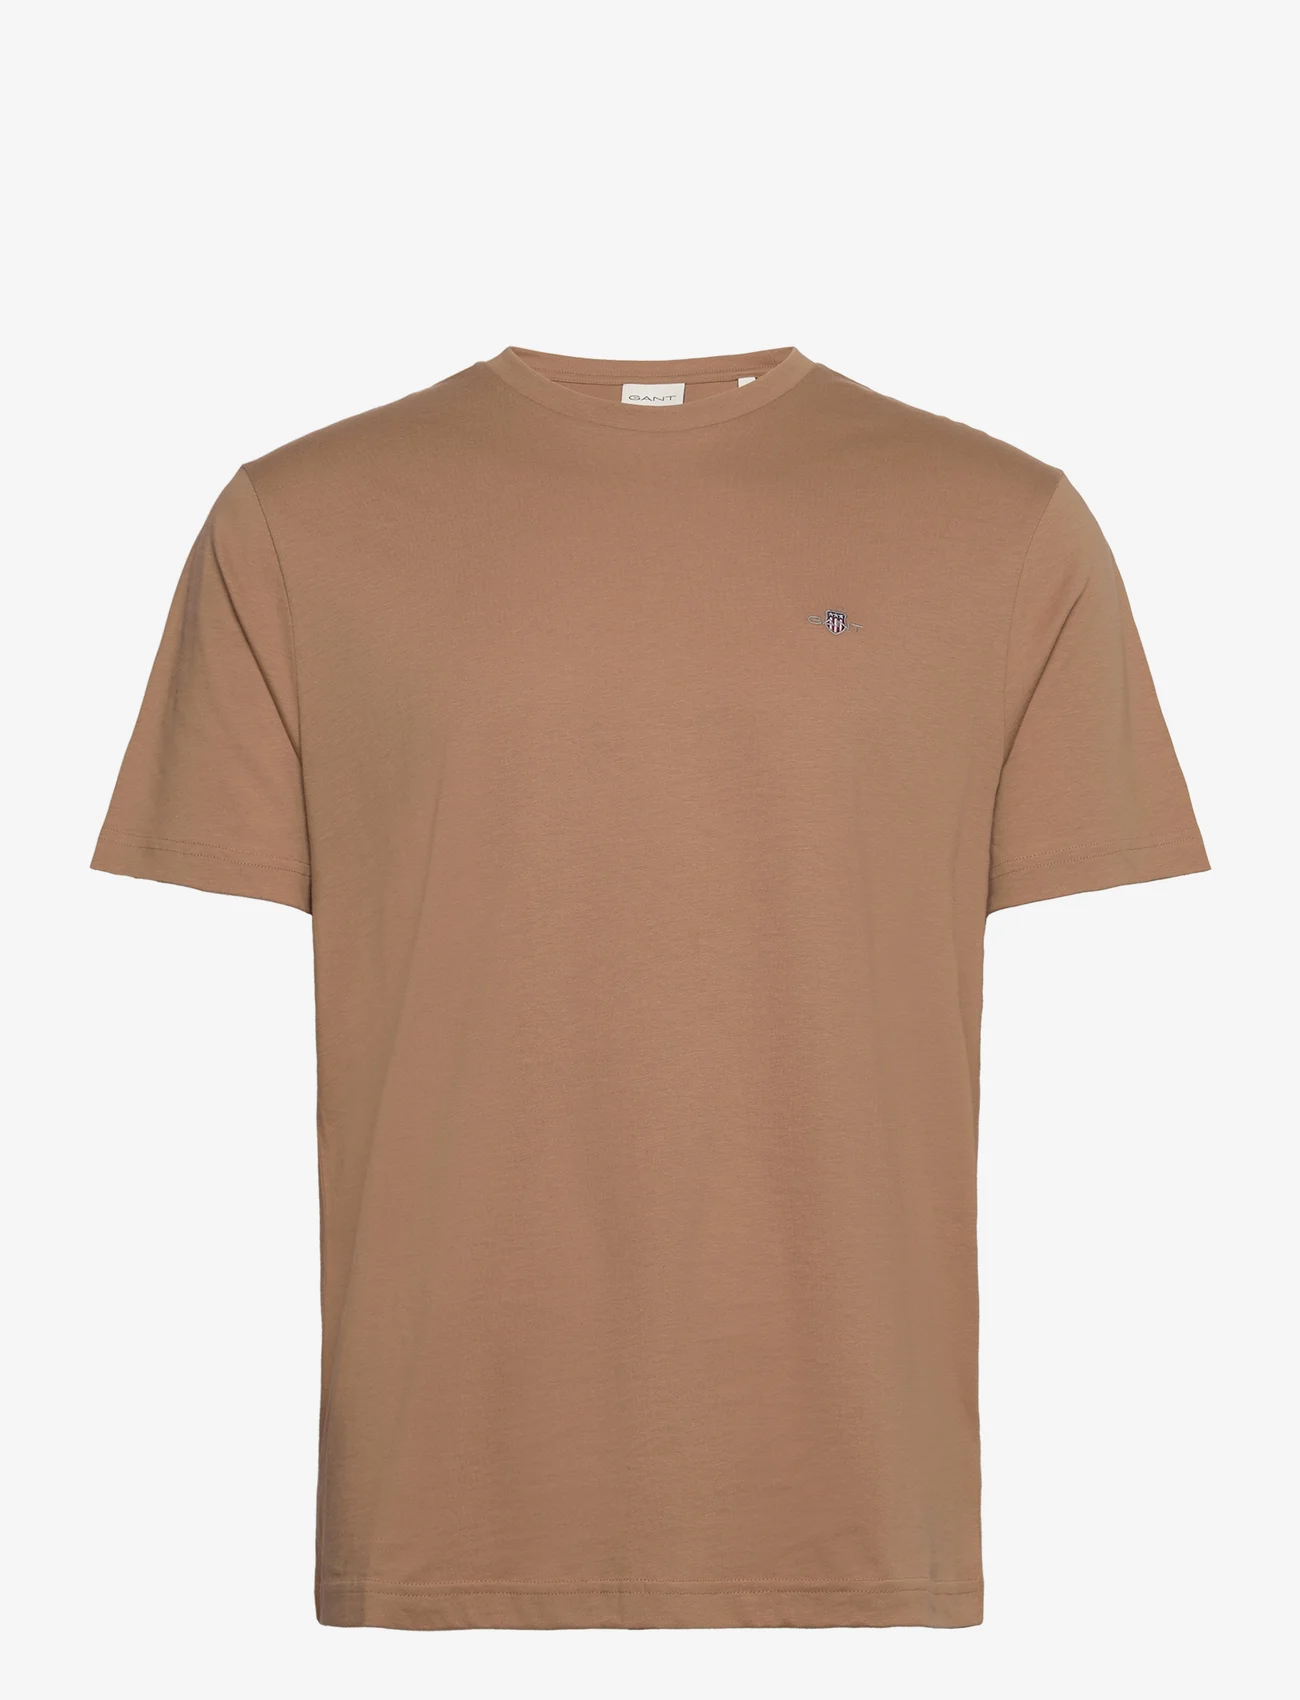 GANT - REG SHIELD SS T-SHIRT - basic t-shirts - warm khaki - 0